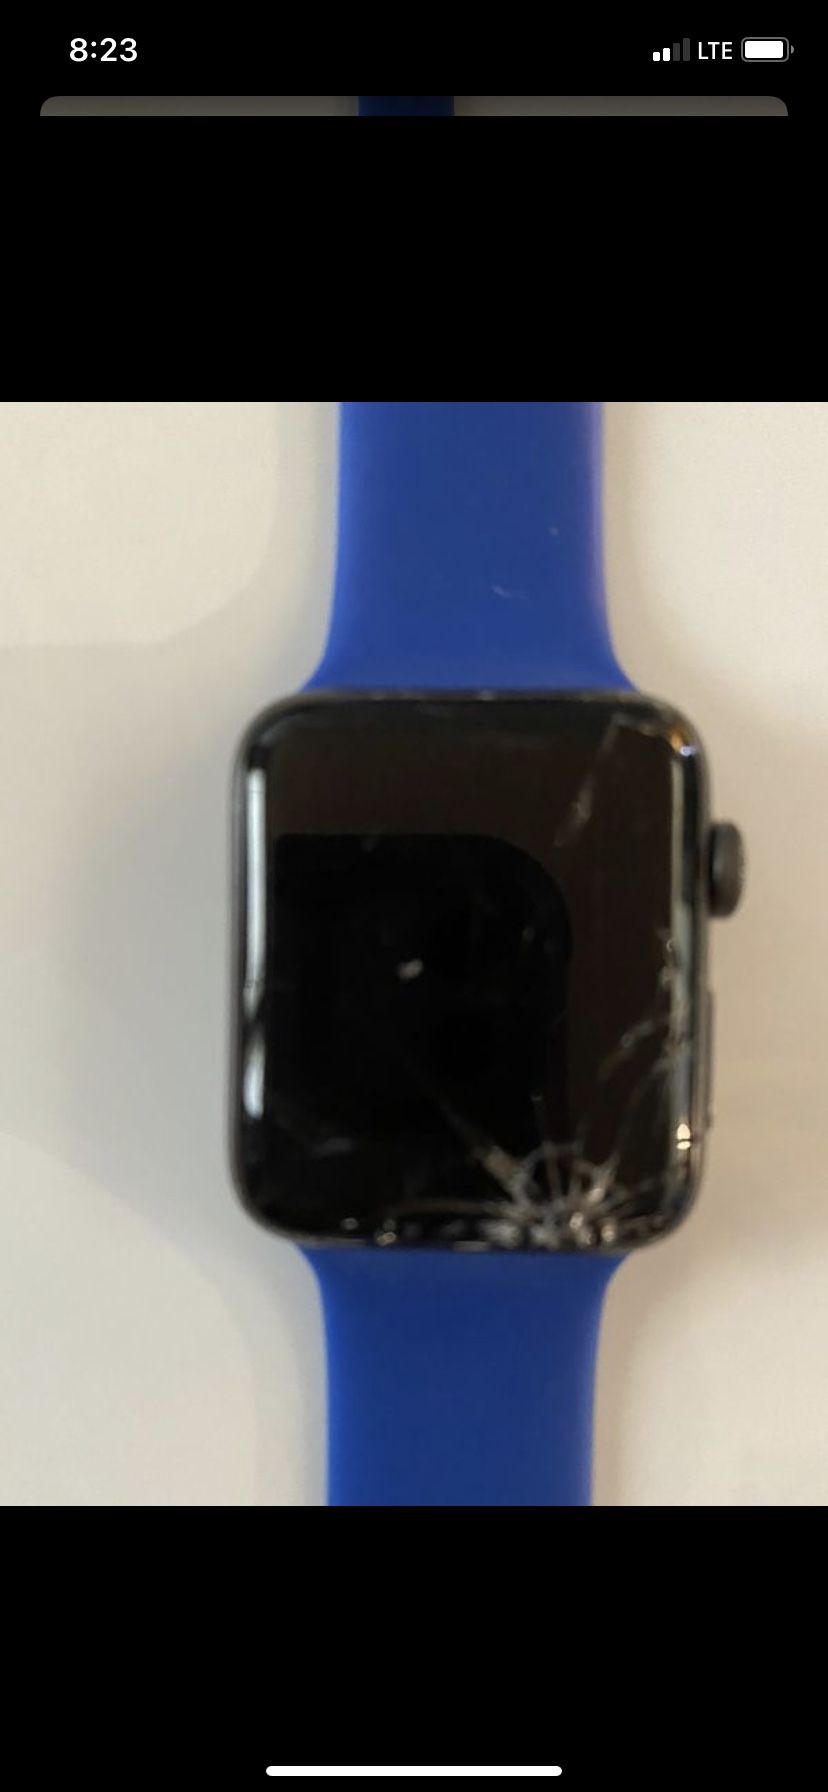 Apple Watch series 2 with broken screen